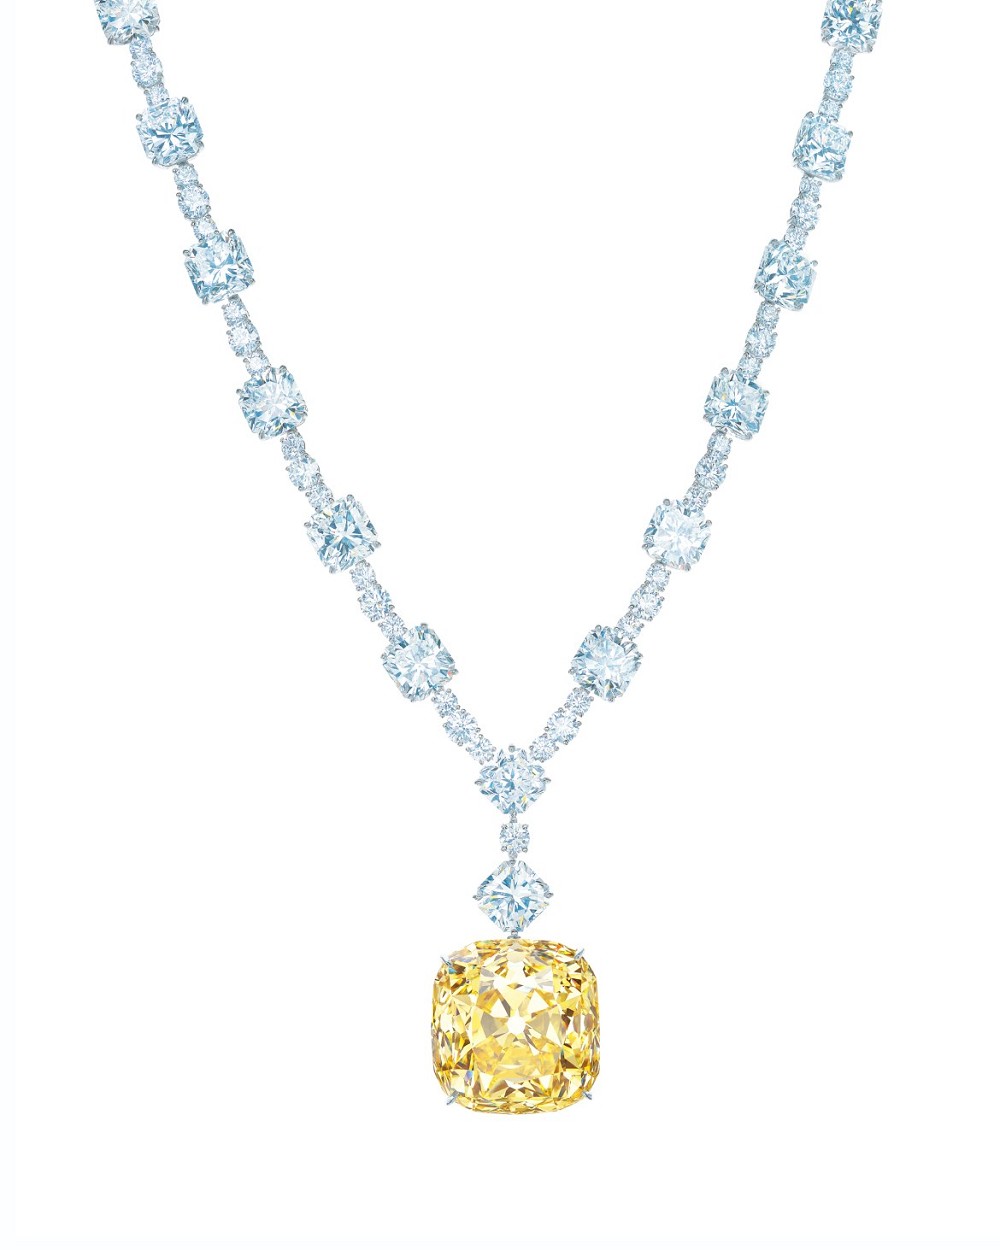 『珠宝』全球一周：莱索托王国发现一颗13.33ct宝石级粉钻原石，Lady Gaga 佩戴 Tiffany 128.54